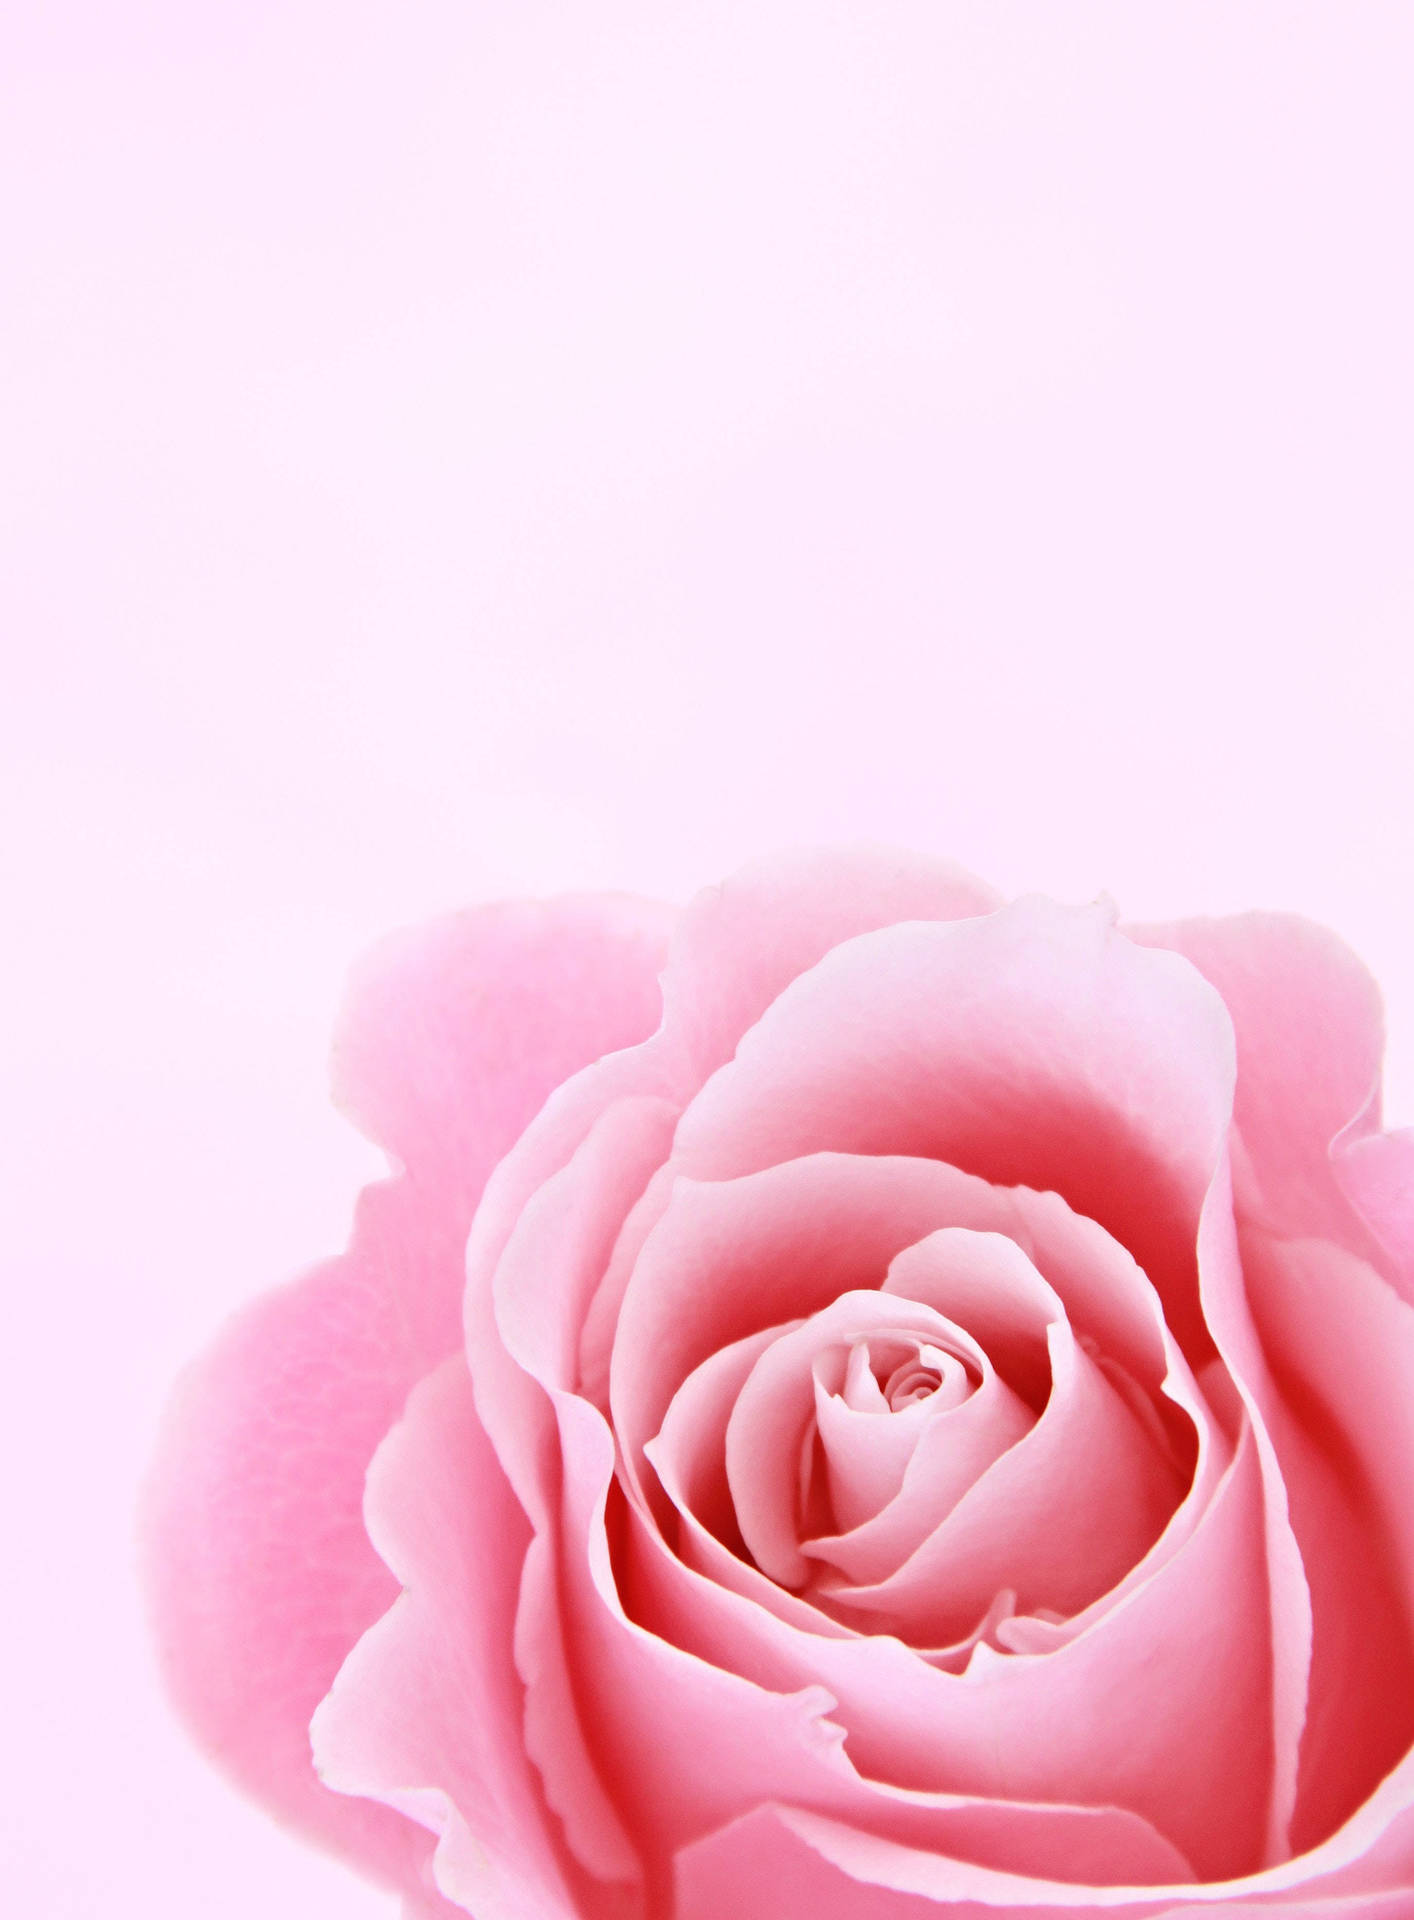 Fondode Pantalla De Bloqueo Femenino Con Rosa Rosa Para Iphone. Fondo de pantalla